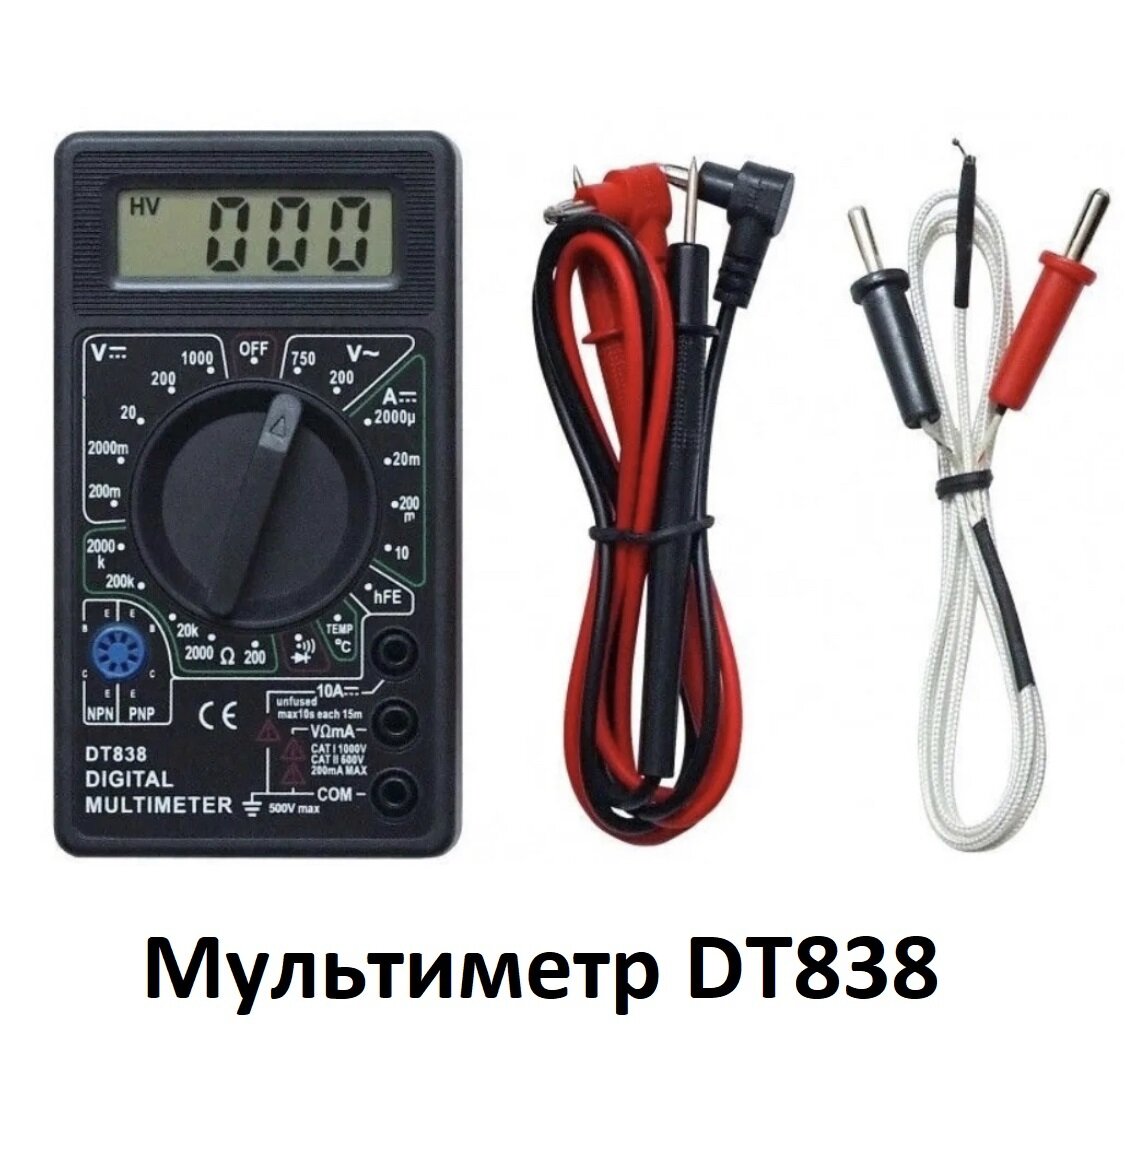 Мультиметр DT-838 / вольтметр / амперметр/ тестер электрический/ многофункциональный цифровой мультиметр,